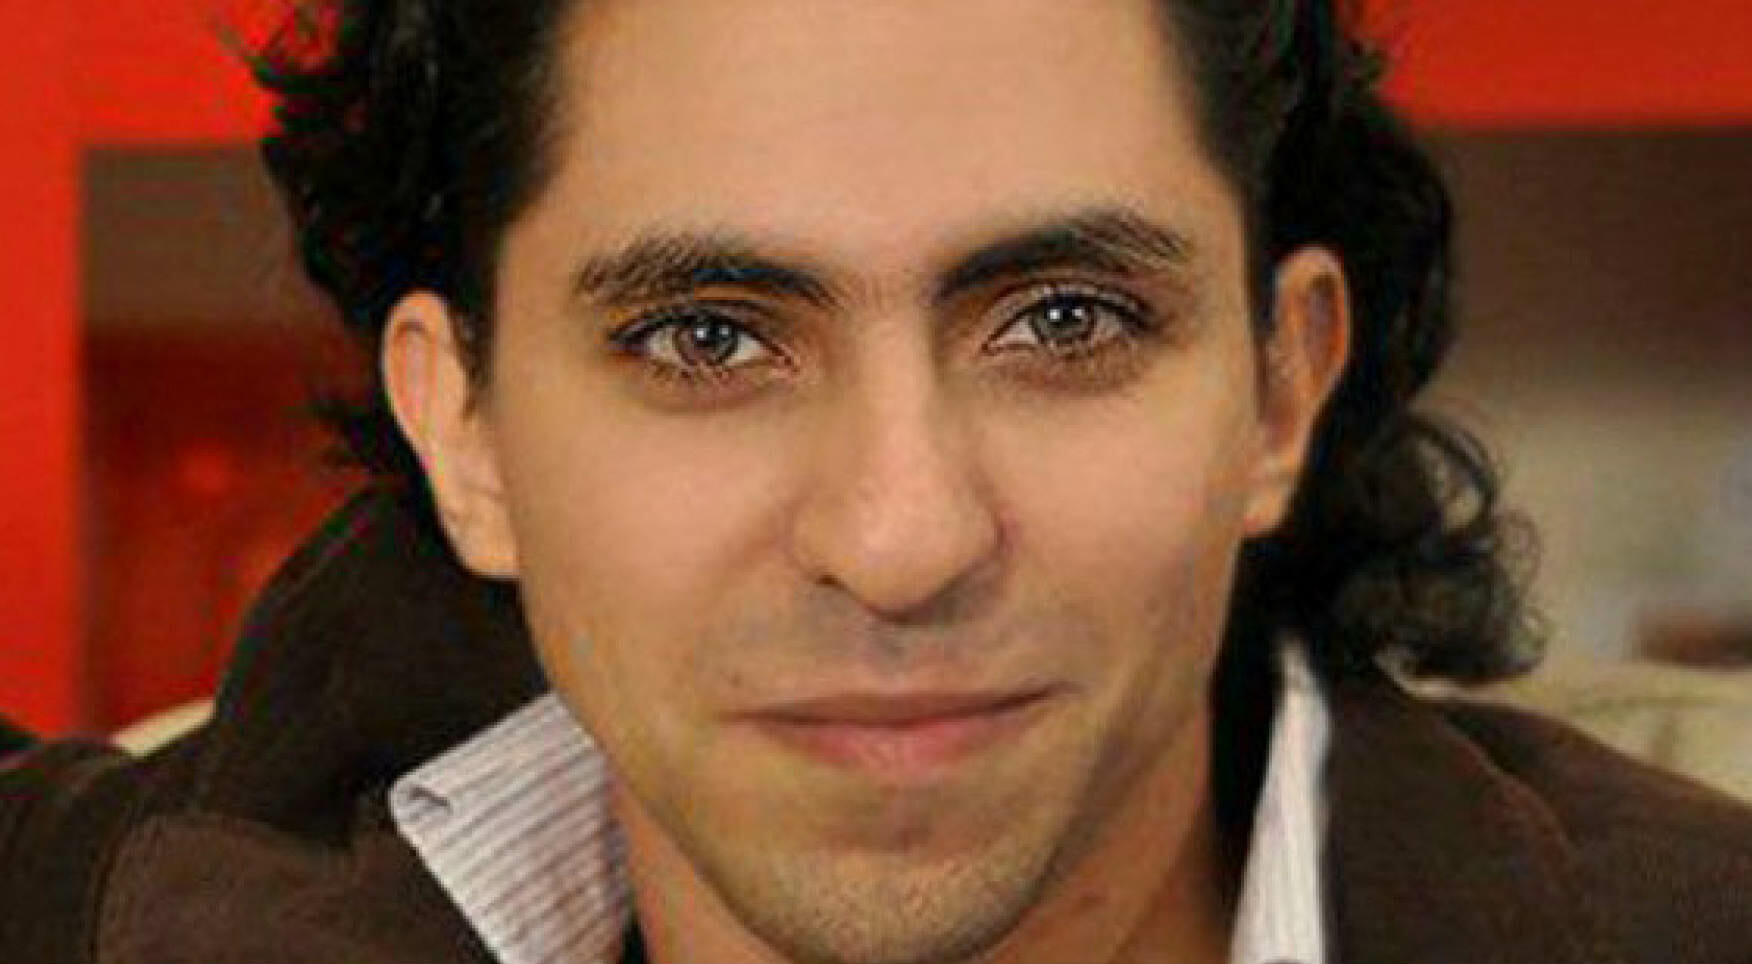 Le parole che hanno portato alla condanna del blogger saudita Raif Badawi